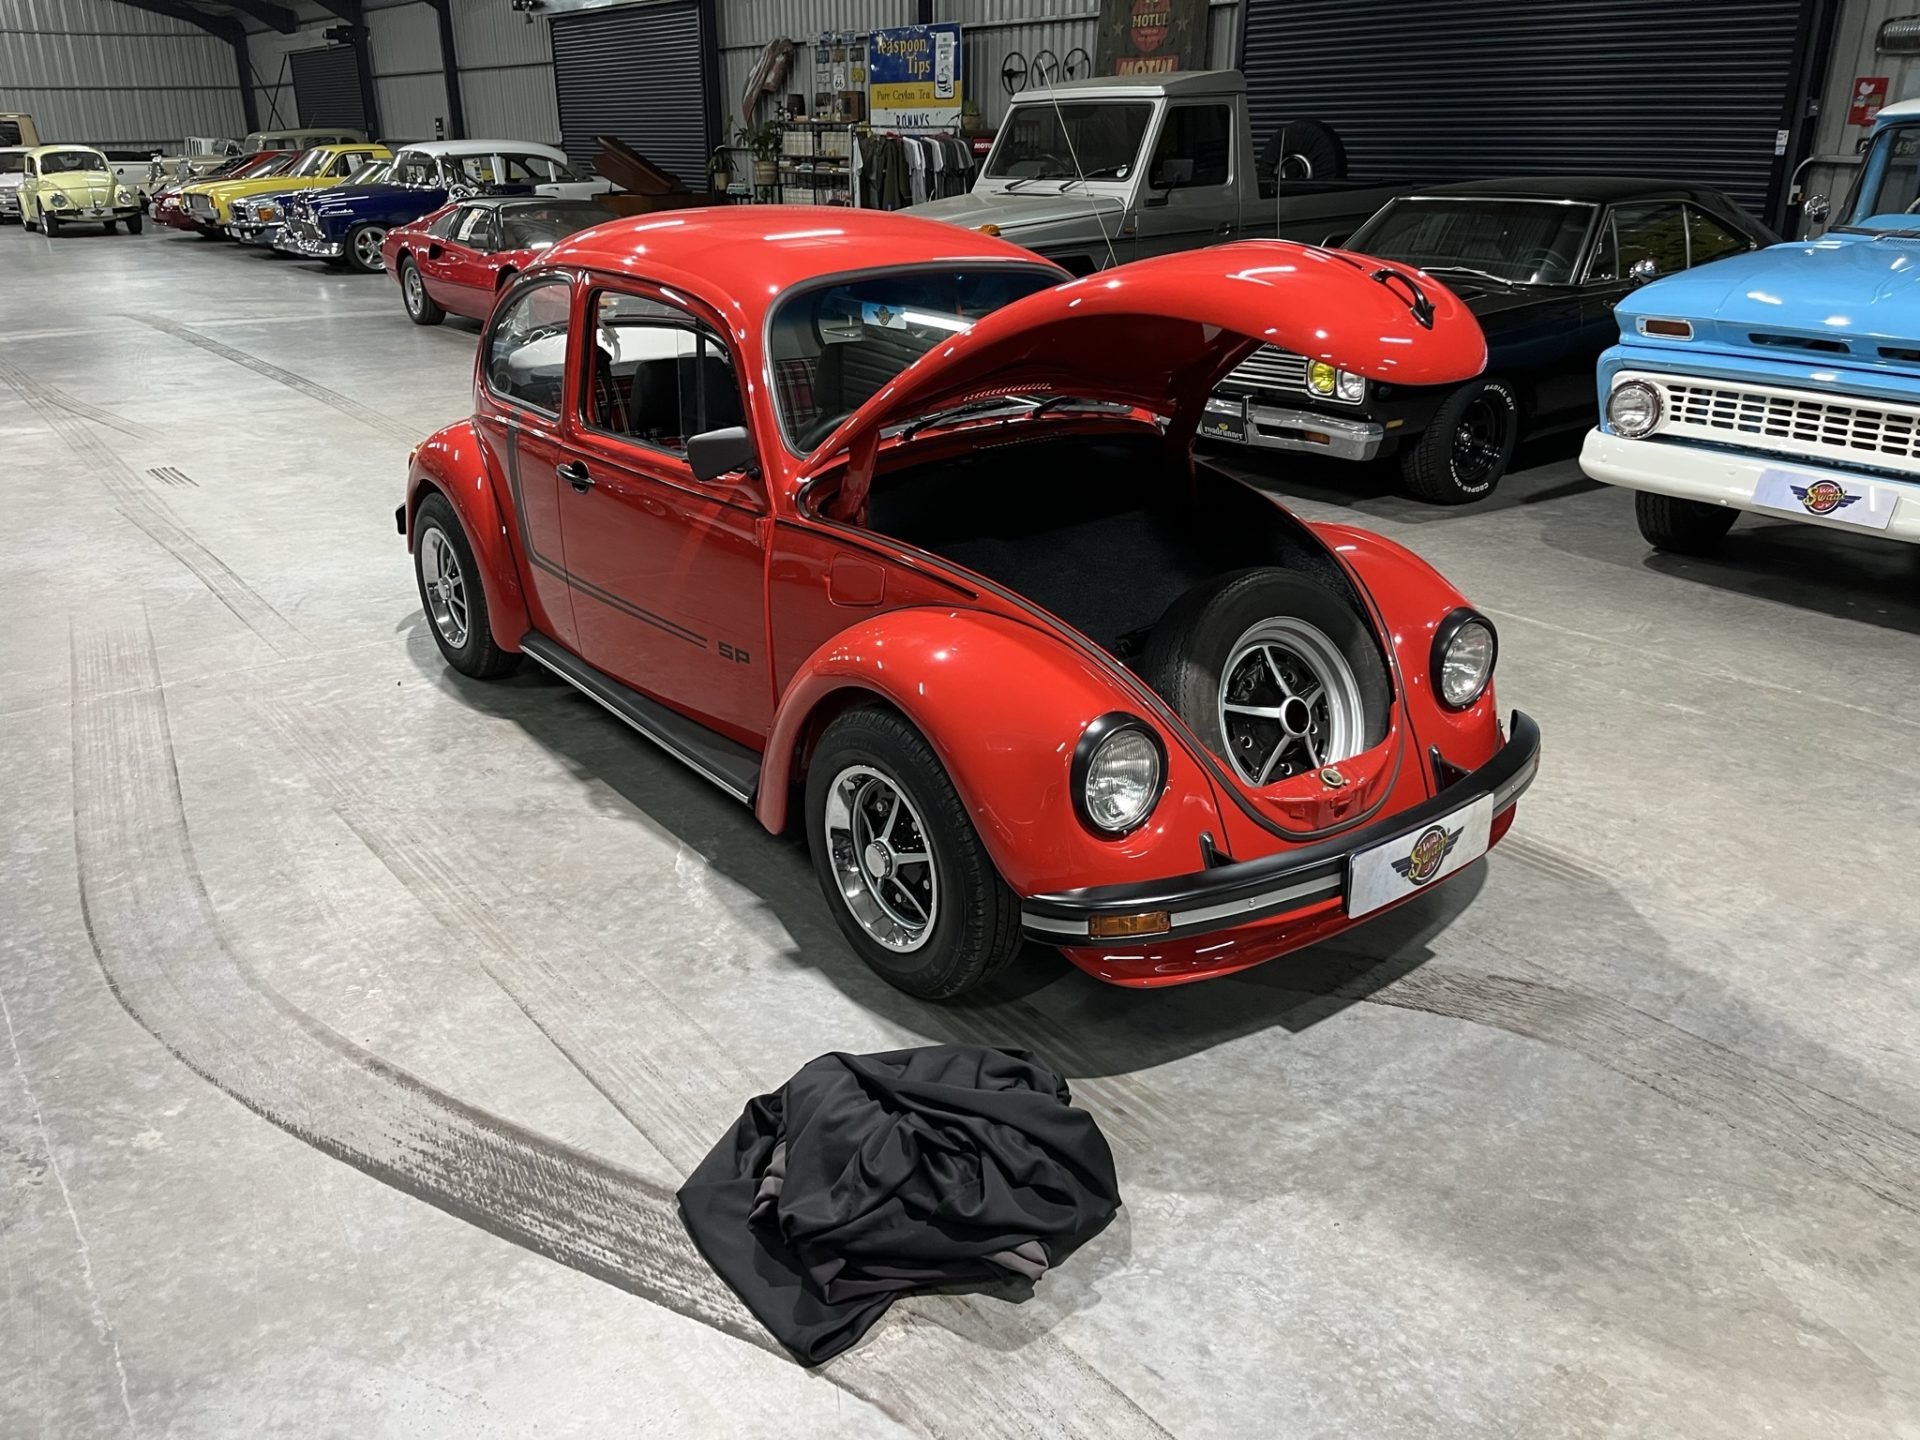 1976 Volkswagen SP Beetle Recreation